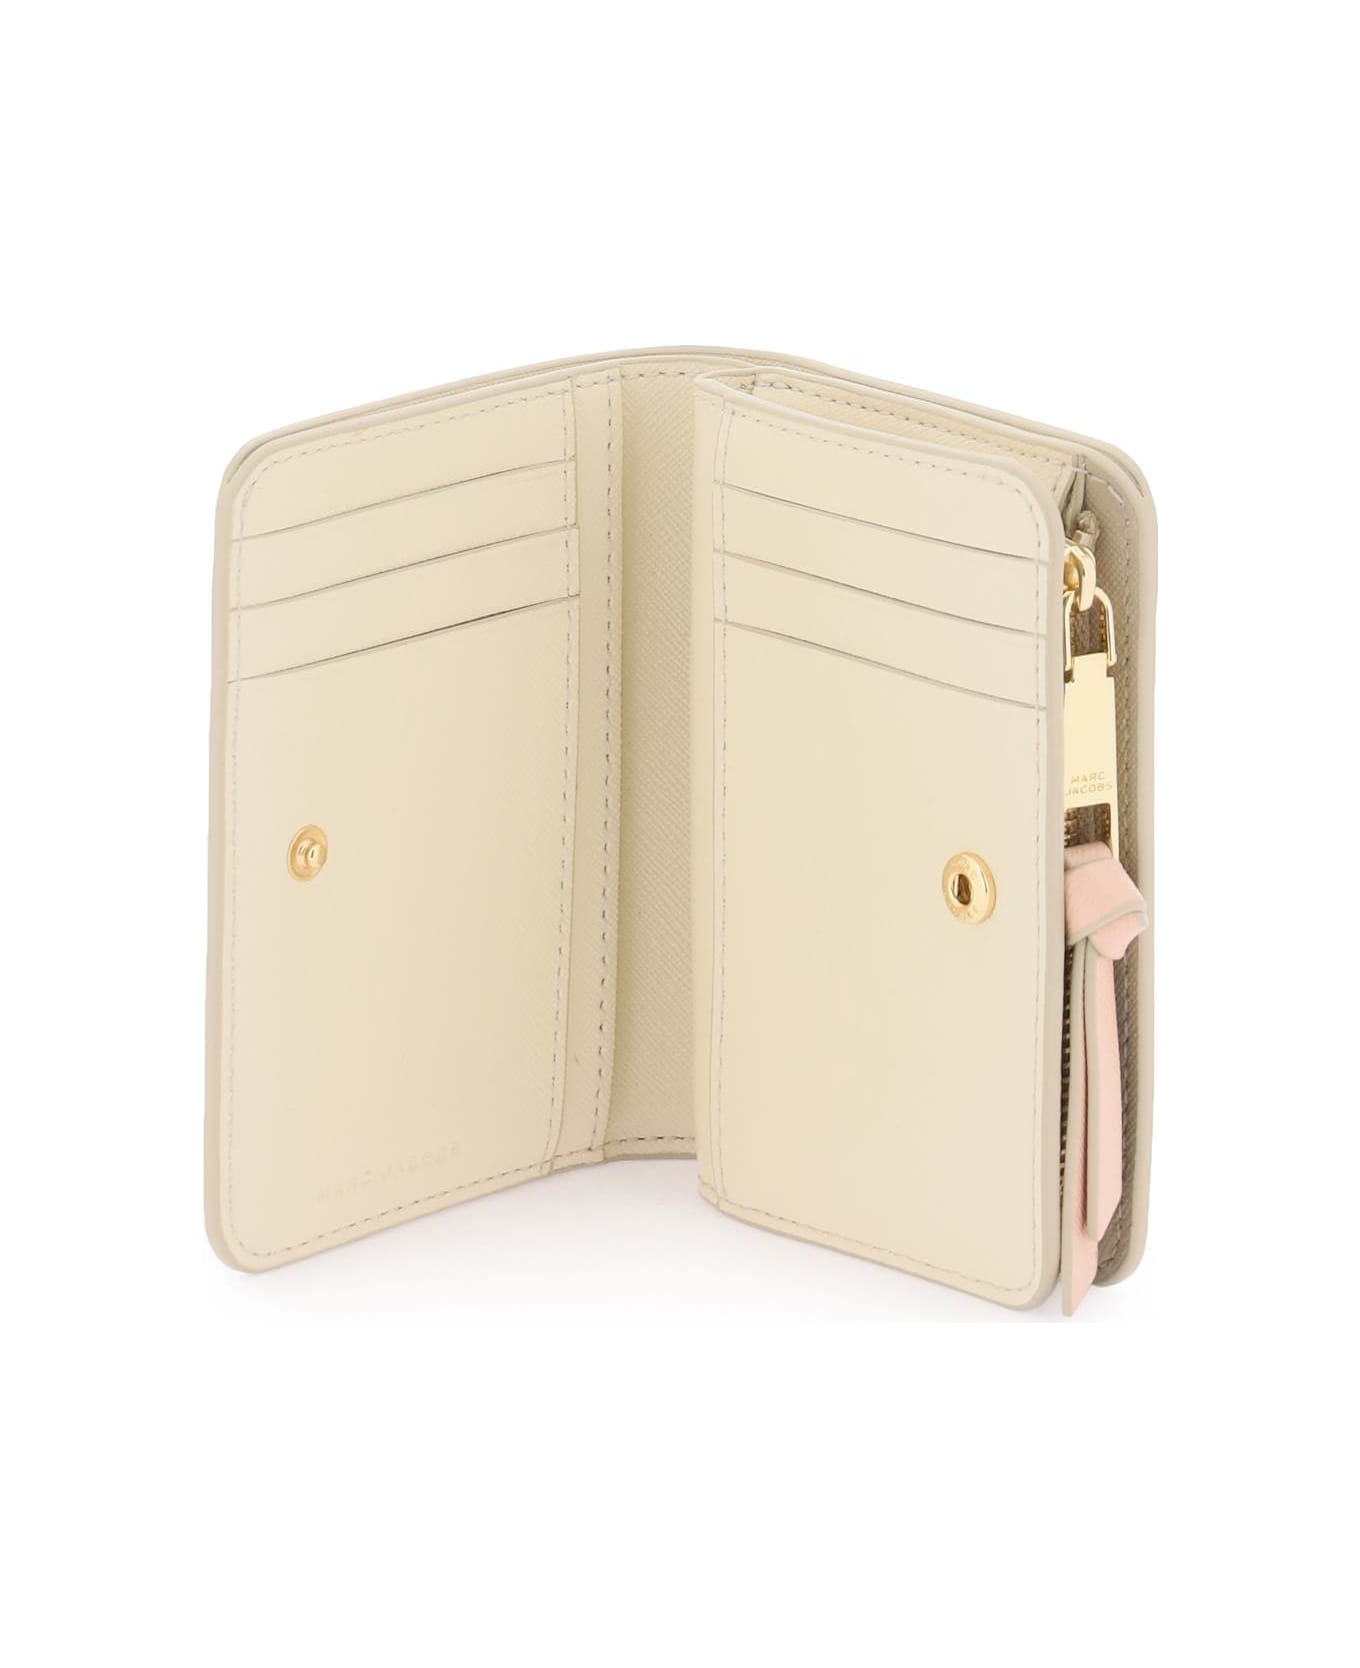 Marc Jacobs The Mini Compact Wallet - KHAKI MULTI (Beige) 財布